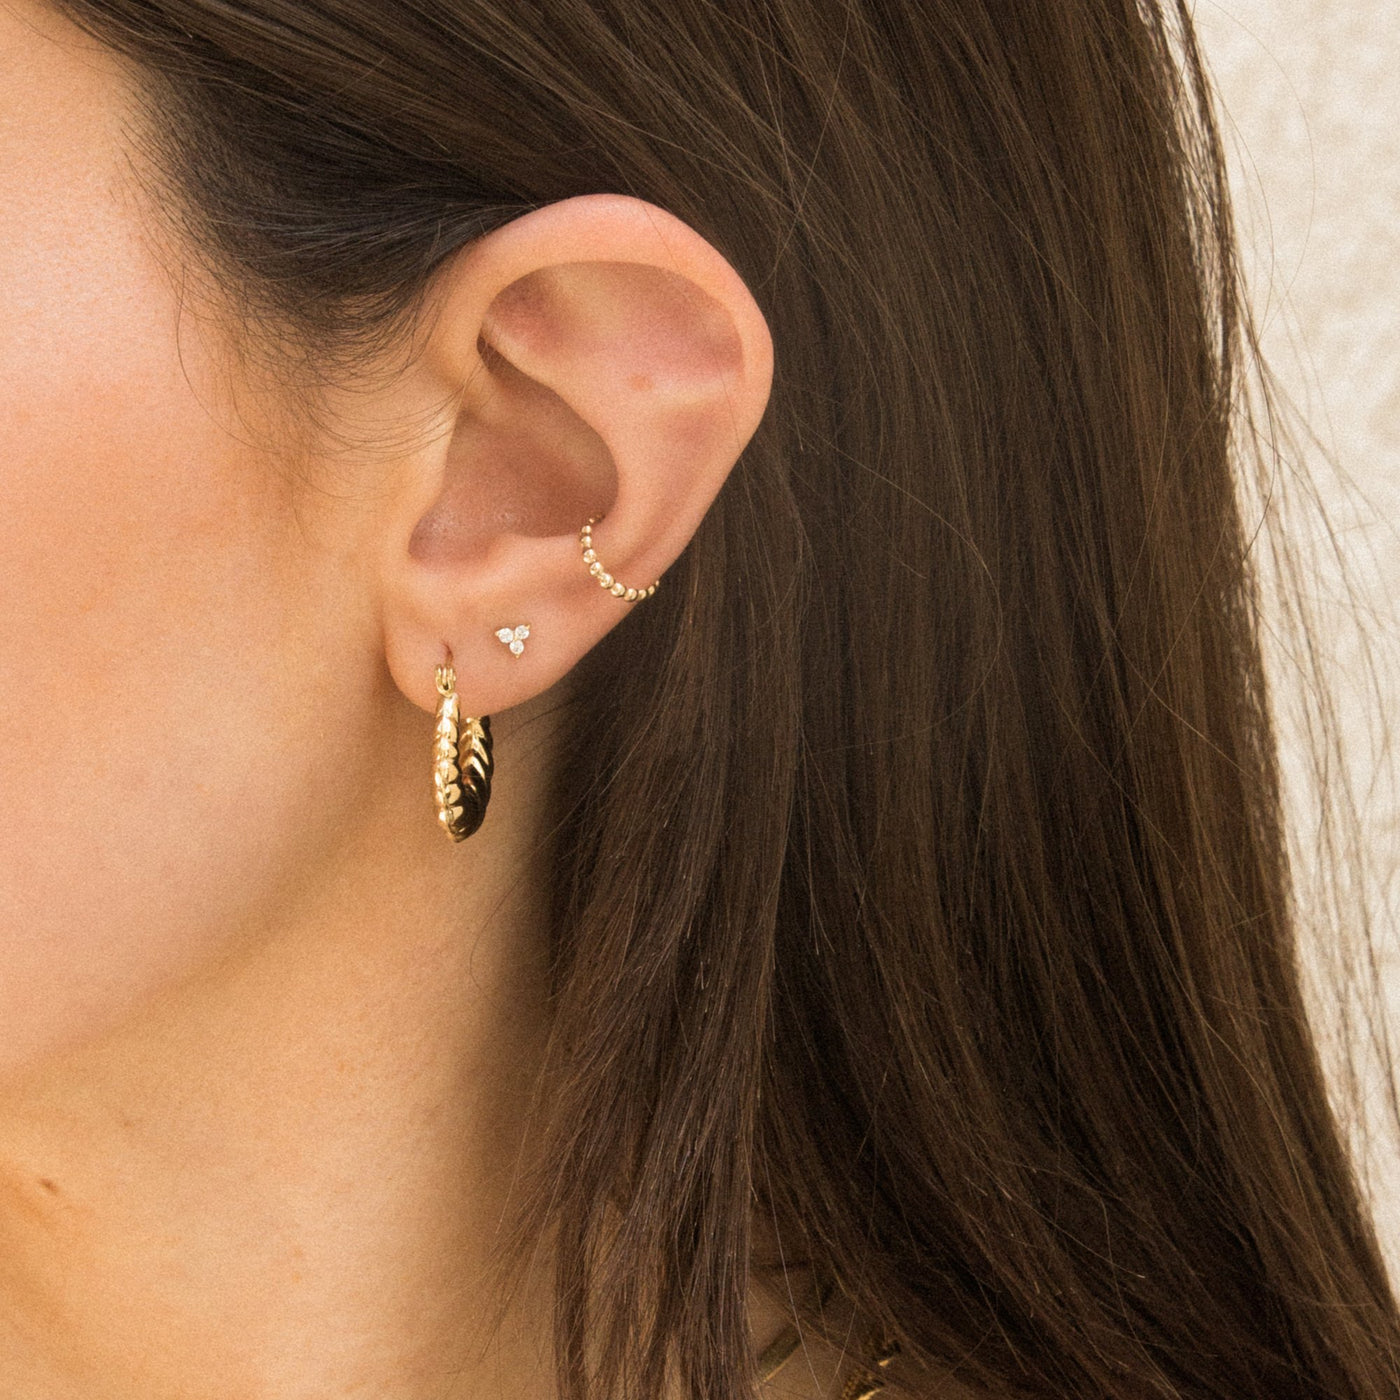 Triple Diamond Stud Earrings by Simple & Dainty Jewelry